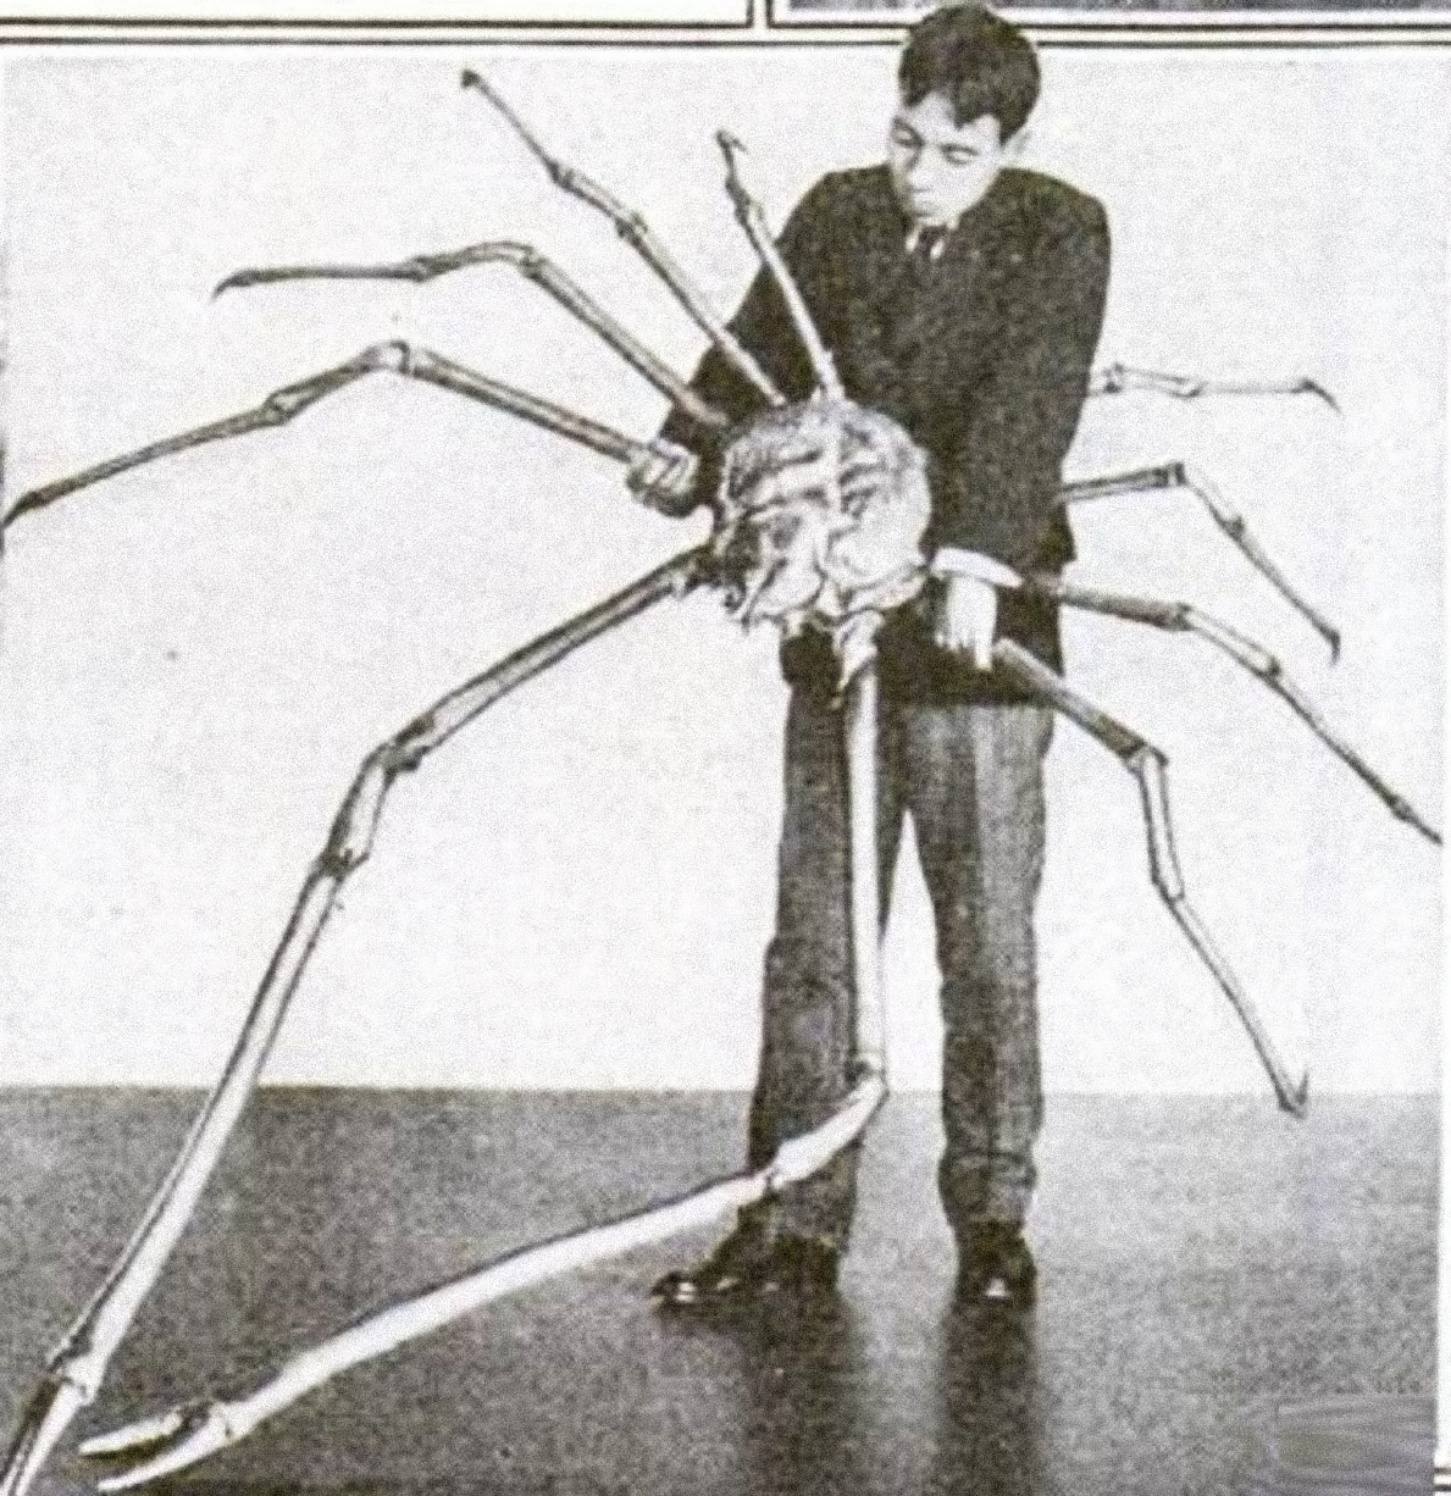 एक जापानी मकड़ी केकड़ा जिसके फैले हुए पैरों की लंबाई 3.7 मीटर (12 फीट) थी।